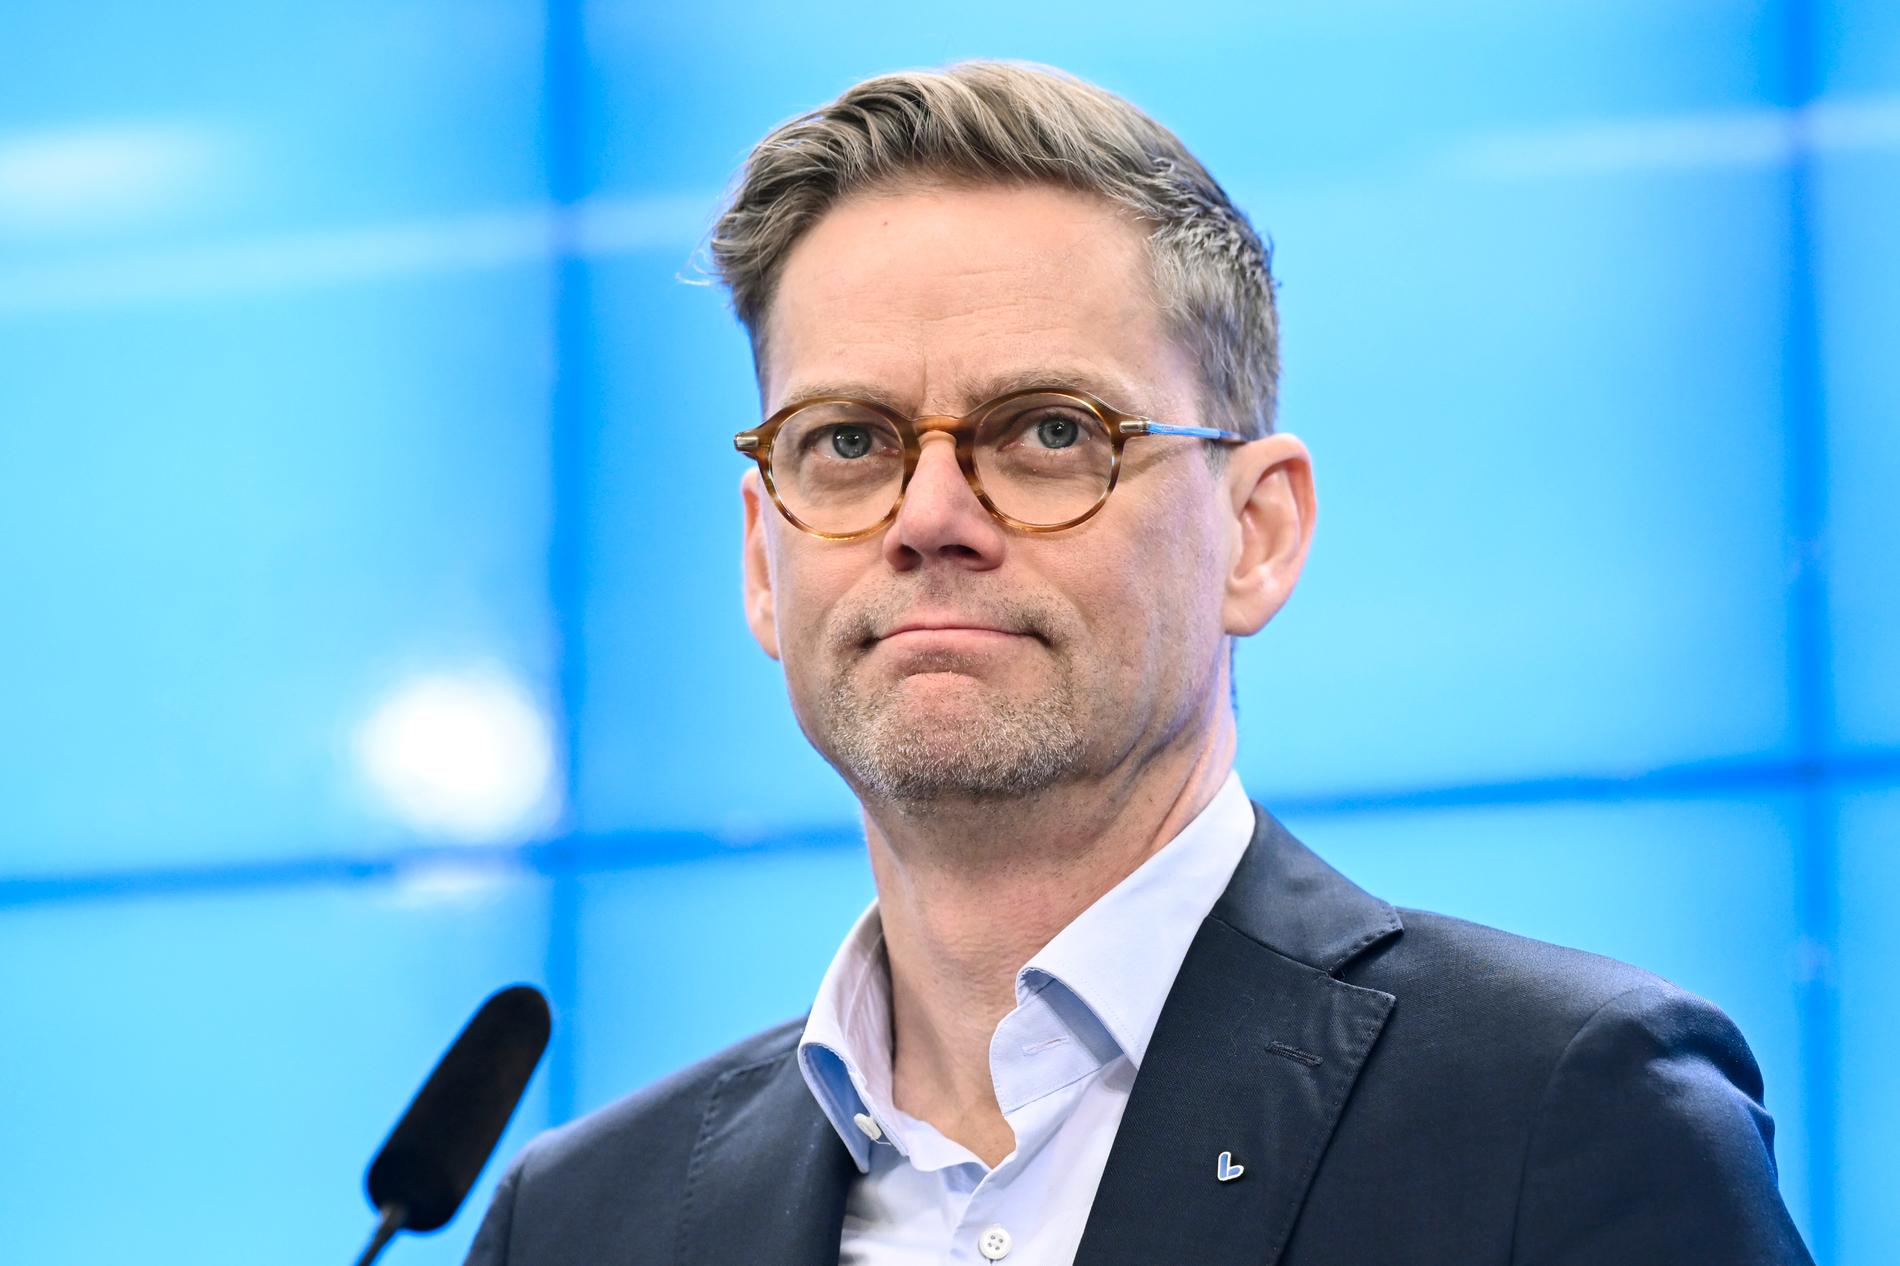 Liberalernas nya partisekreterare Jakob Olofsgård, riksdagsledamot från Jönköping, presenterades under en pressträff på fredagen.